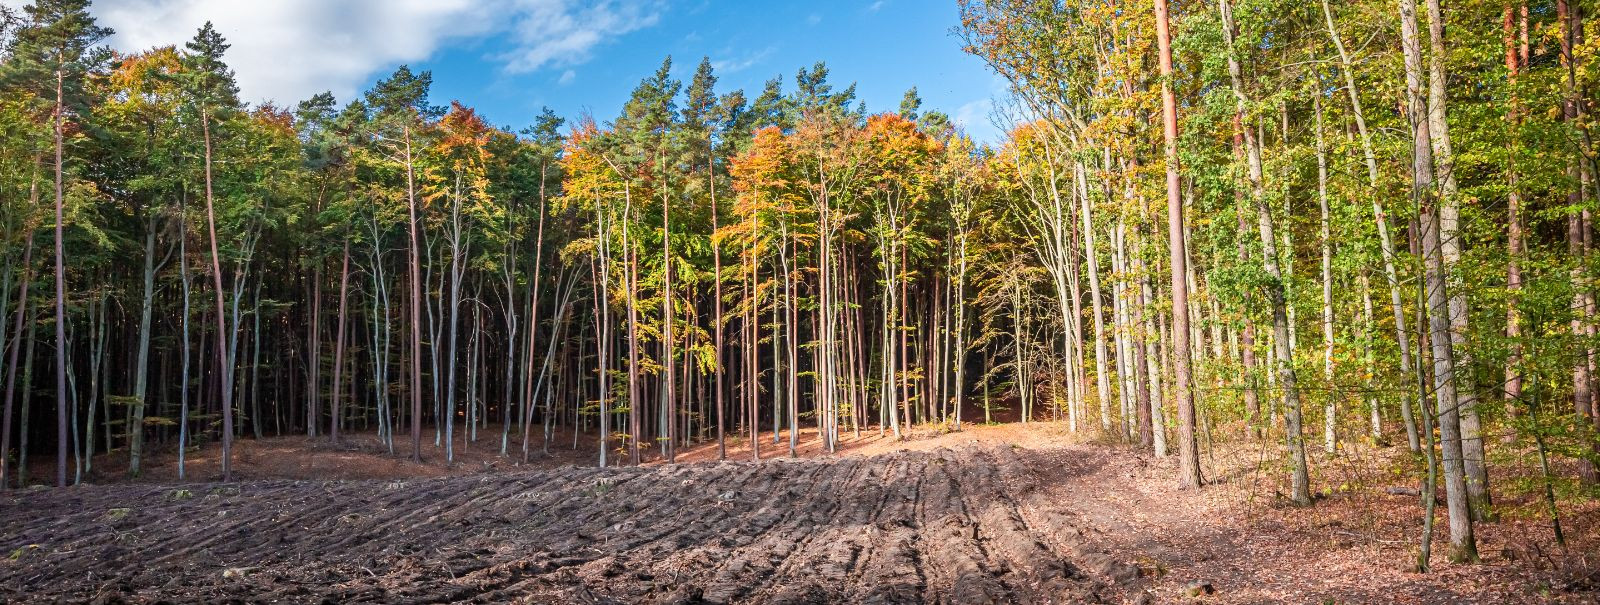 Jätkusuutlik metsandus on majandamise eetos, mis tasakaalustab ...